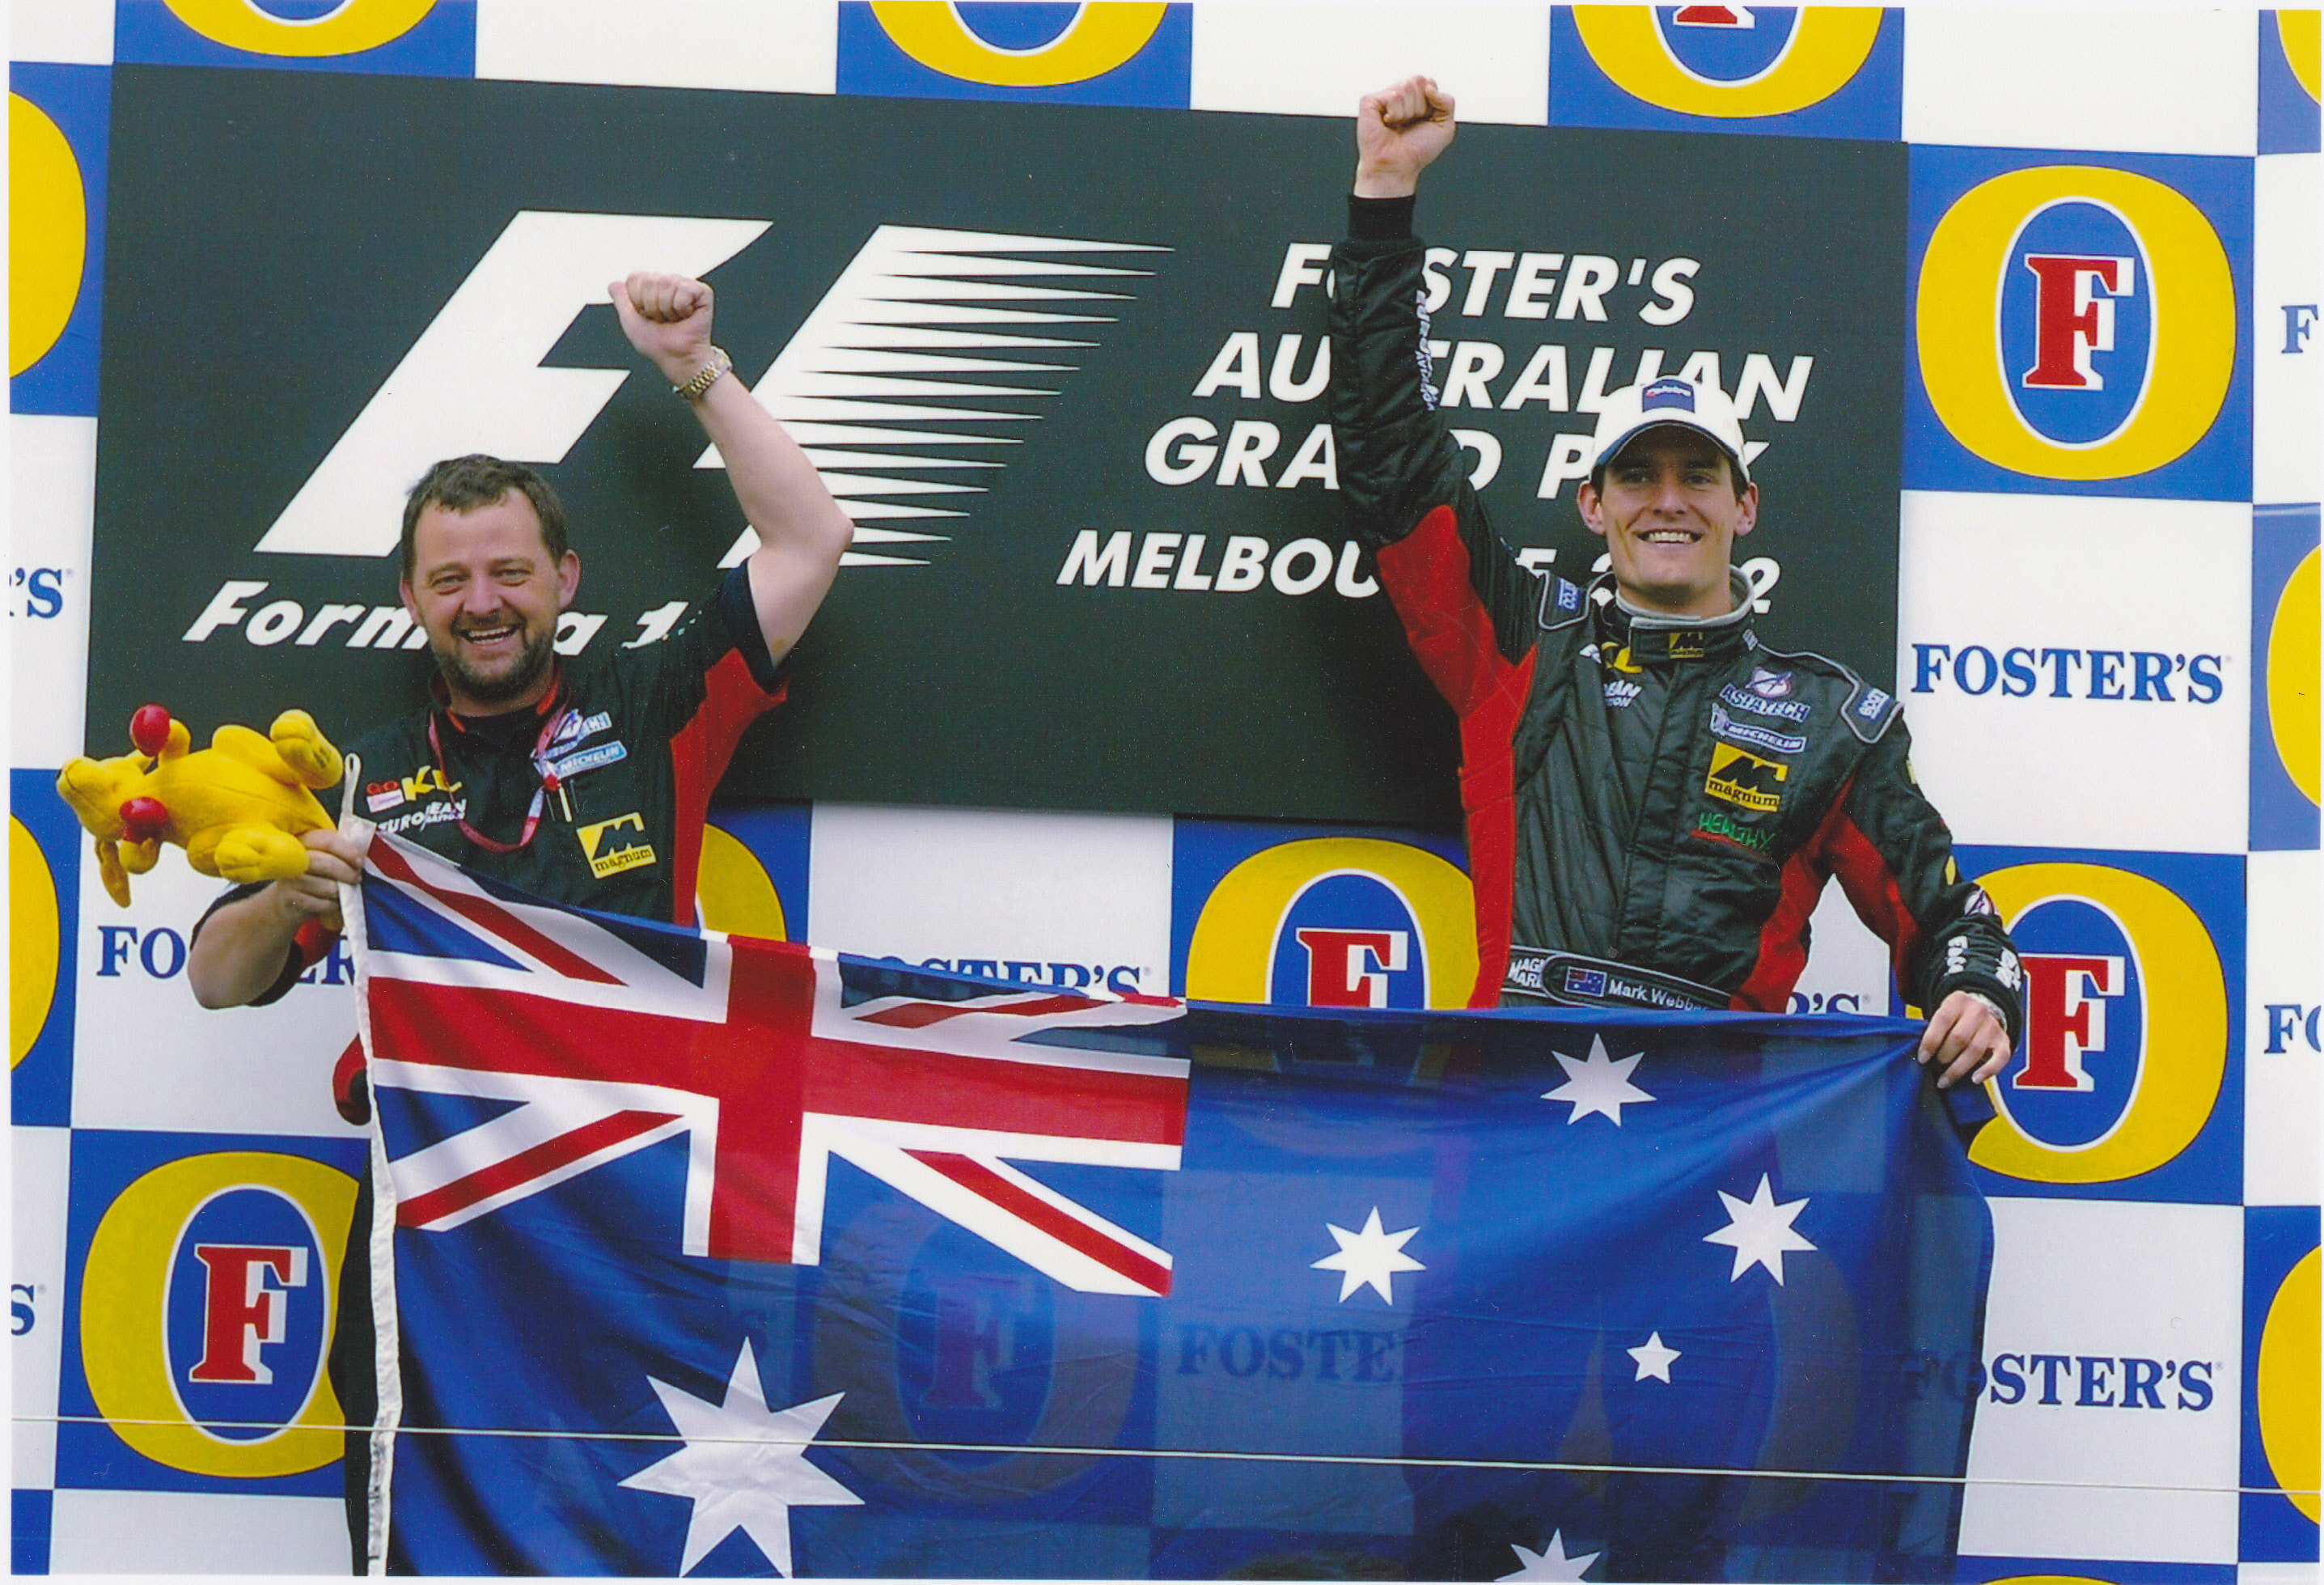 Mark Webber (Minardi) célèbre son incroyable performance de rookie au Grand Prix d'Australie 2002 à Melbourne.